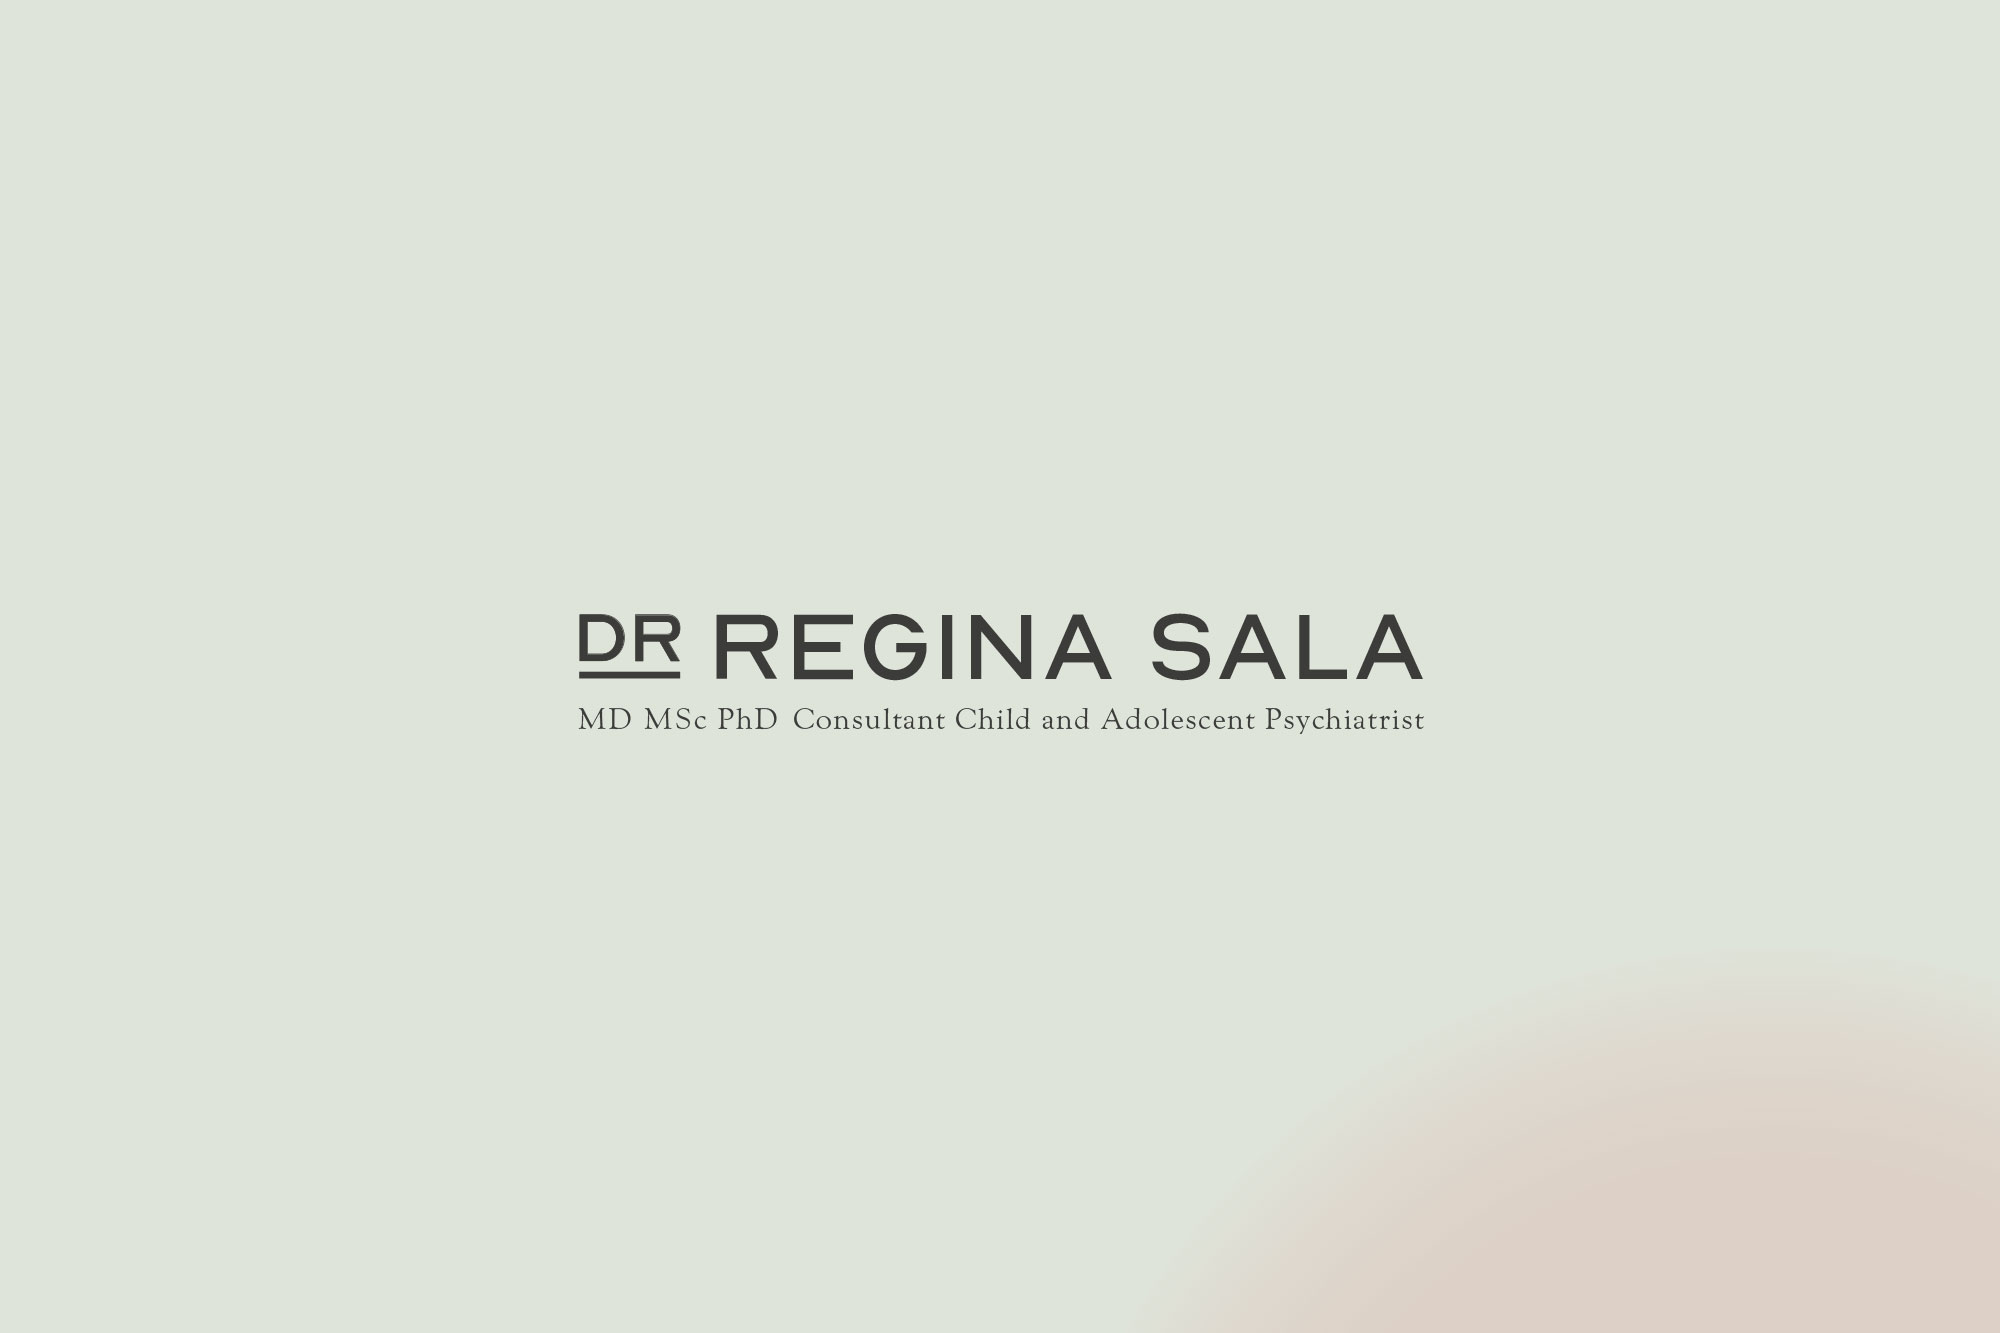 gareth-paul-jones-studio-branding-dr-regina-sala-website-case-study-02